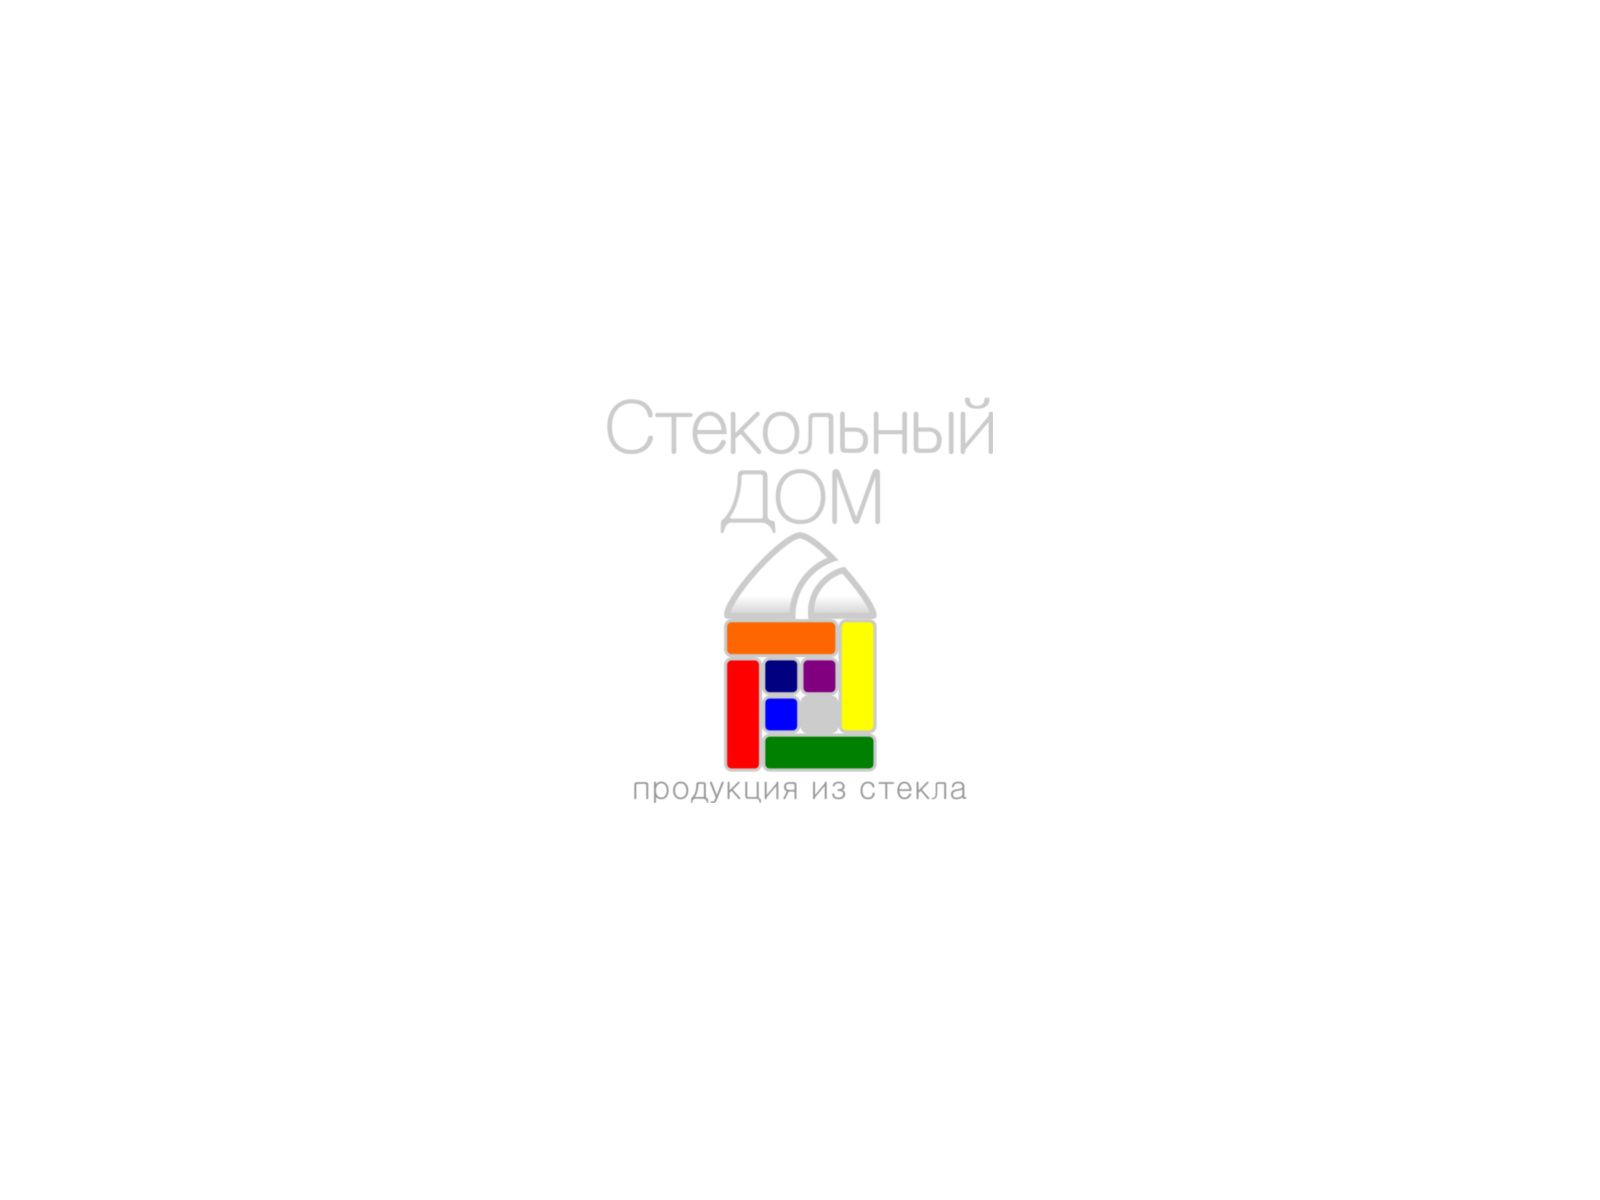 Логотип и ФС для компании «Стекольный дом» - дизайнер sergius1000000